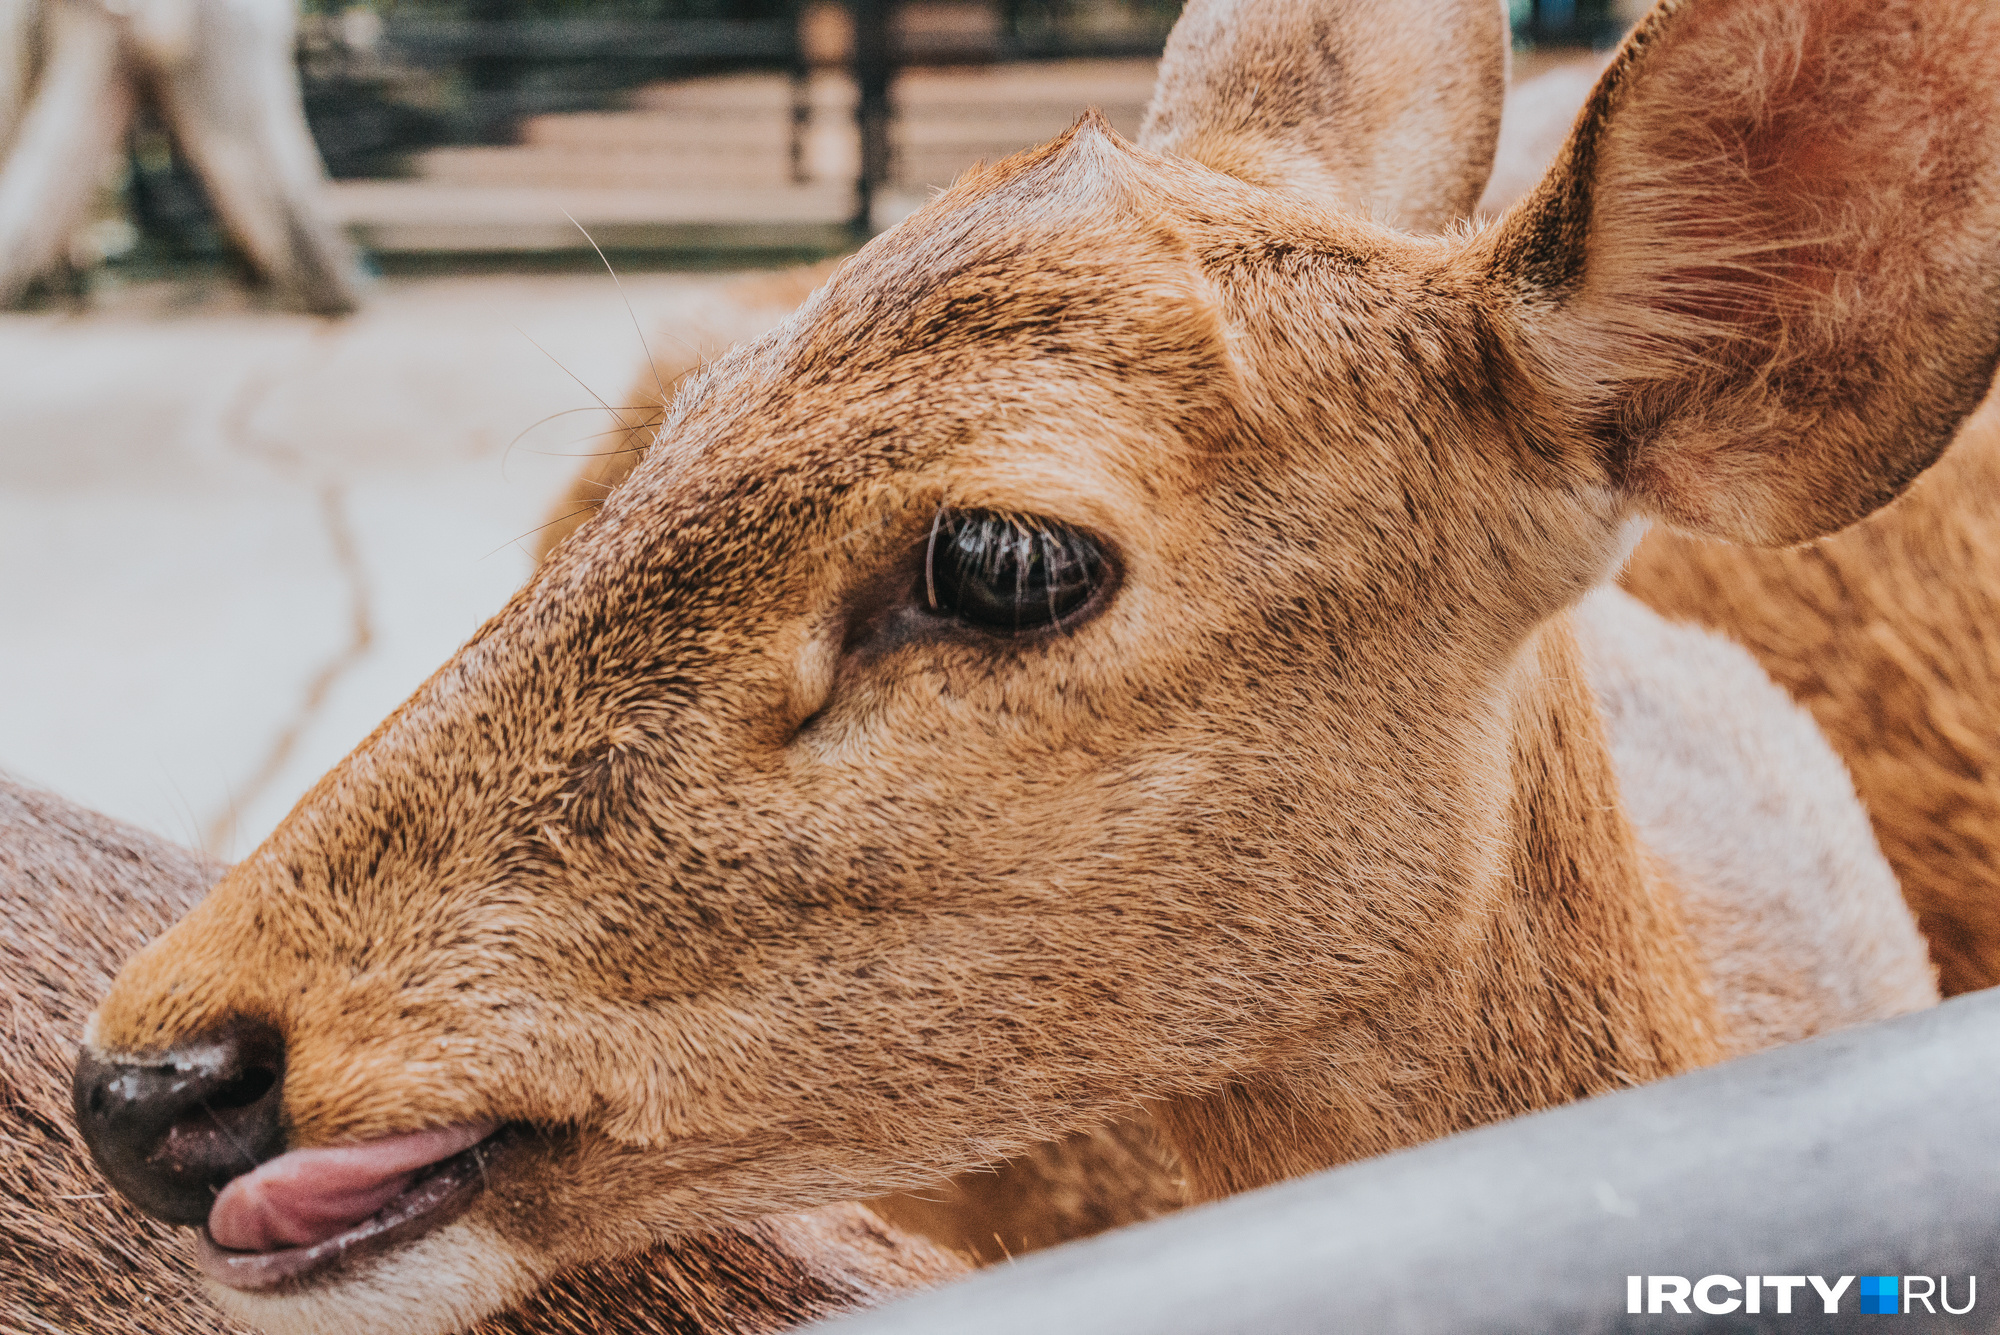 Олени-лира обитают в зоопарке Кхао Кхео. Их можно гладить, кормить и сделать с ними фото